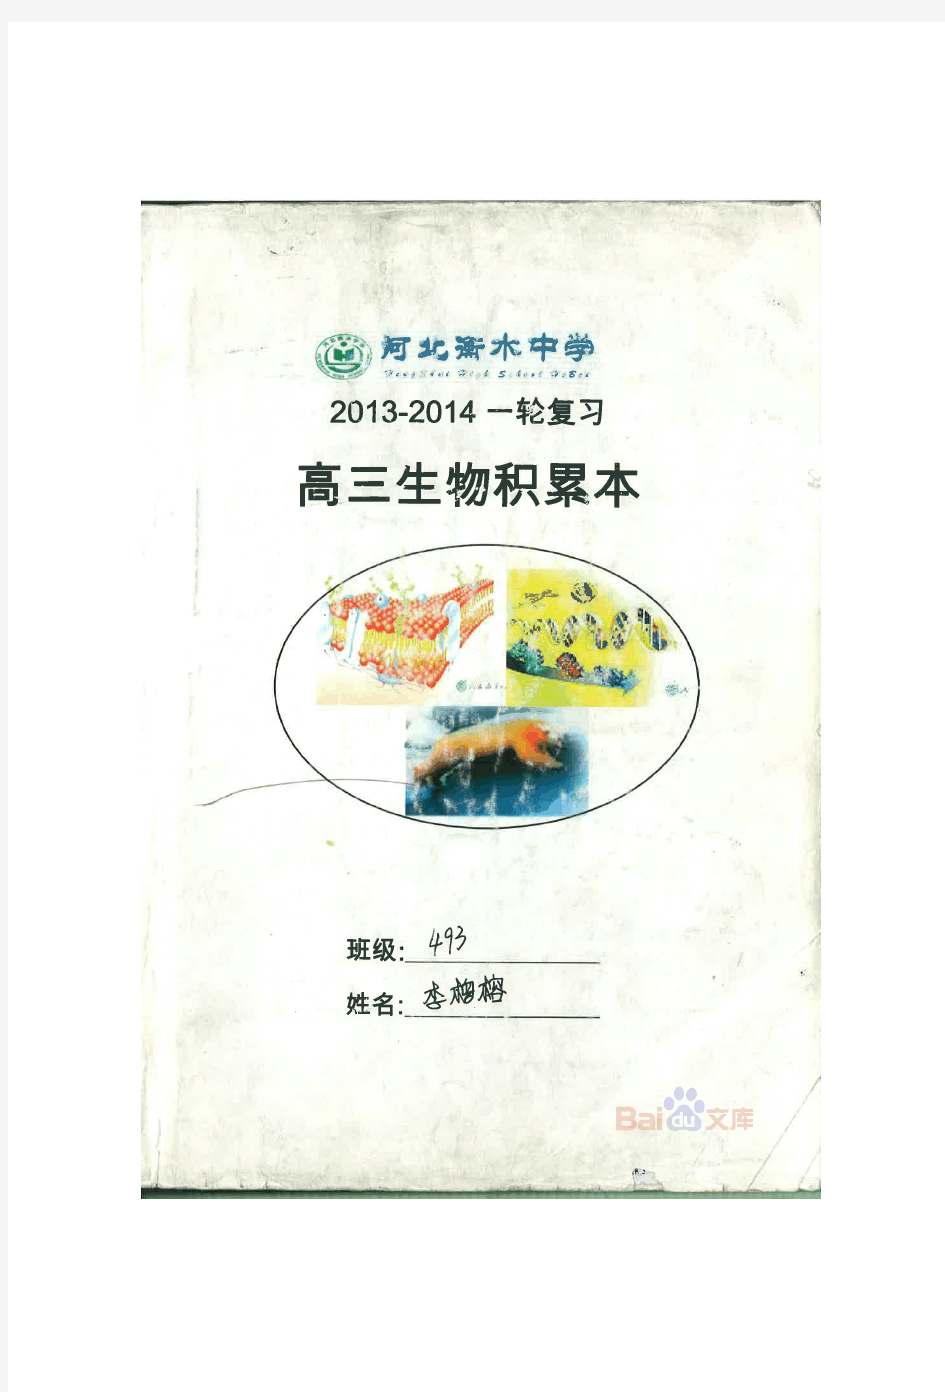 衡水中学理科学霸高中生物笔记012014高考状元笔记.pdf